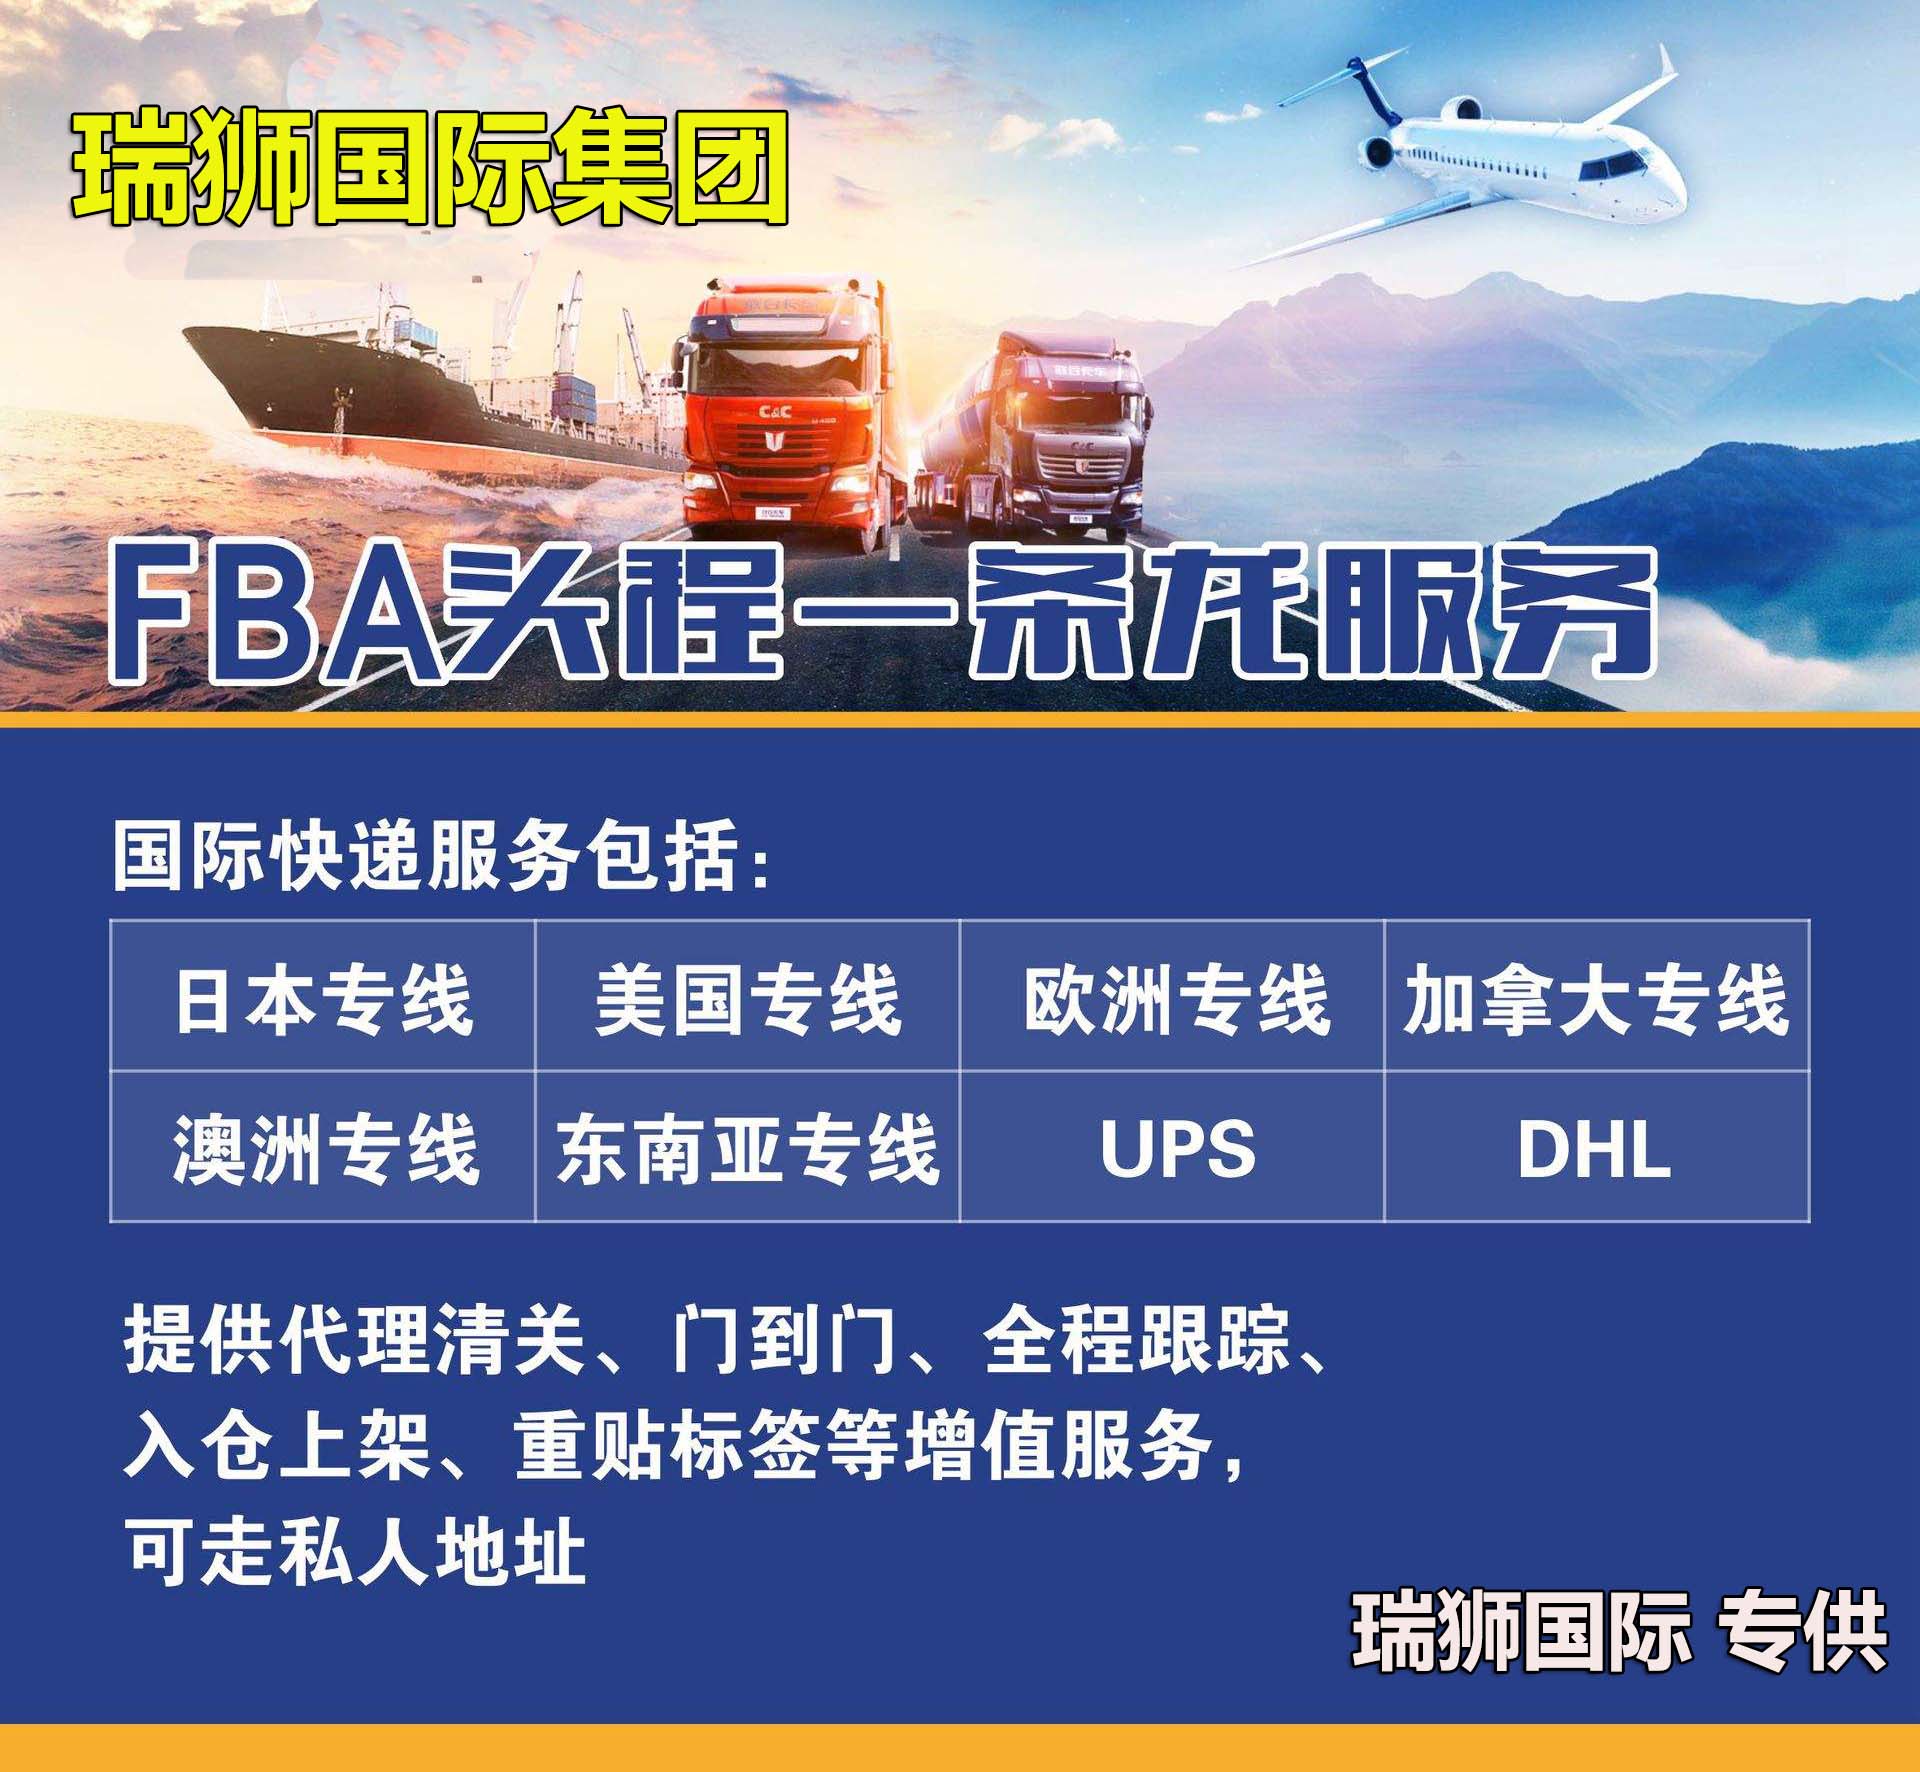 货运代理FOB运输、CIF物流、CFR货运、货运代理DAP国际物流、DDU国际货运代理、DDP双清包税到门等货运代理